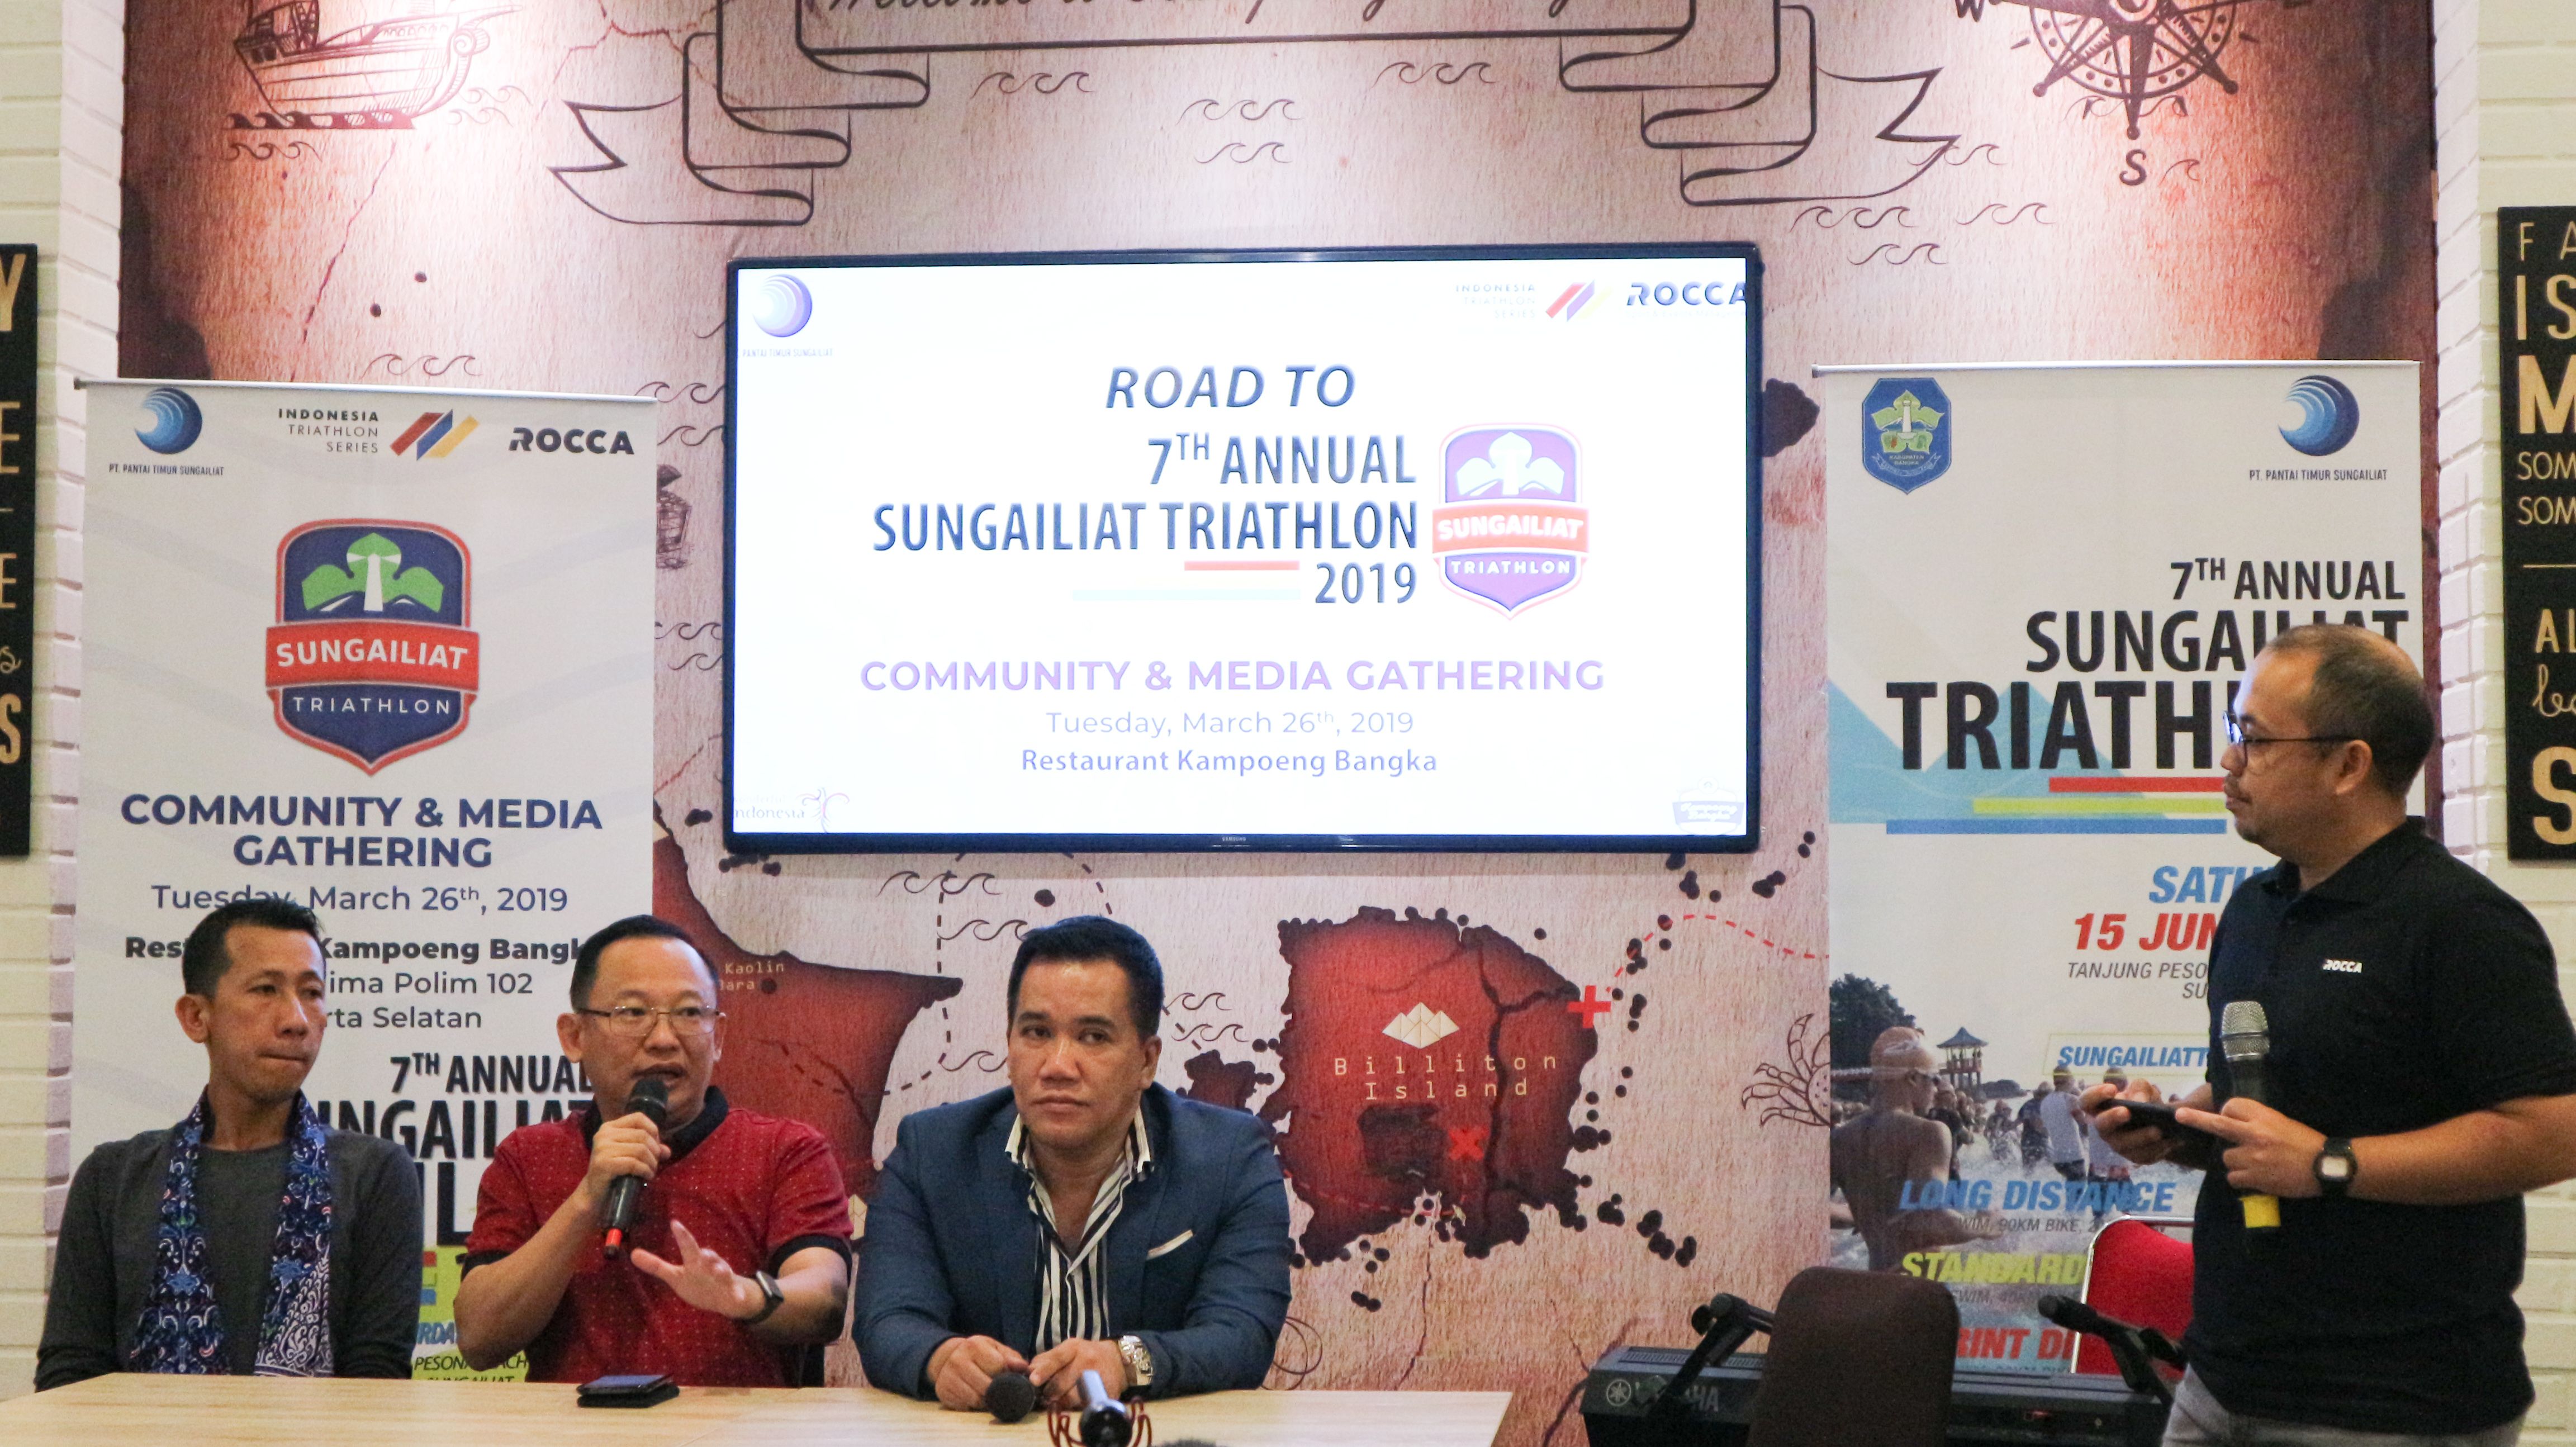 Launching Indonesia Triathlon Series & Road to 7 Annual Sungailiat Triathlon 2019 Copyright: © Humas Triathlon